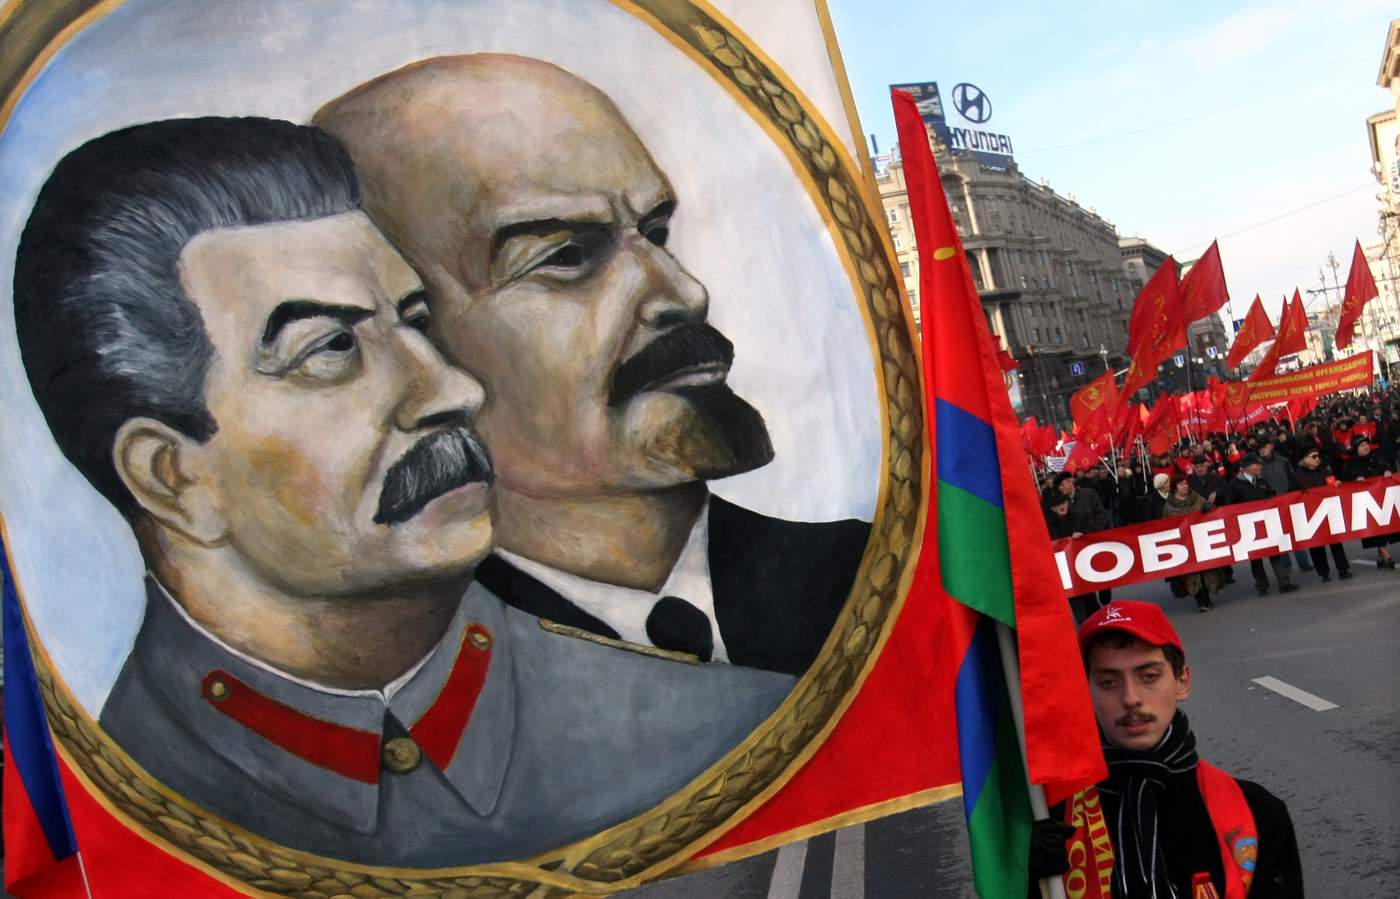 Şubat Devrimi'nin ardından Petrograd'a dönen sosyalist liderler Ekim Devrimi'nin yapılmasında önemli rol oynadı